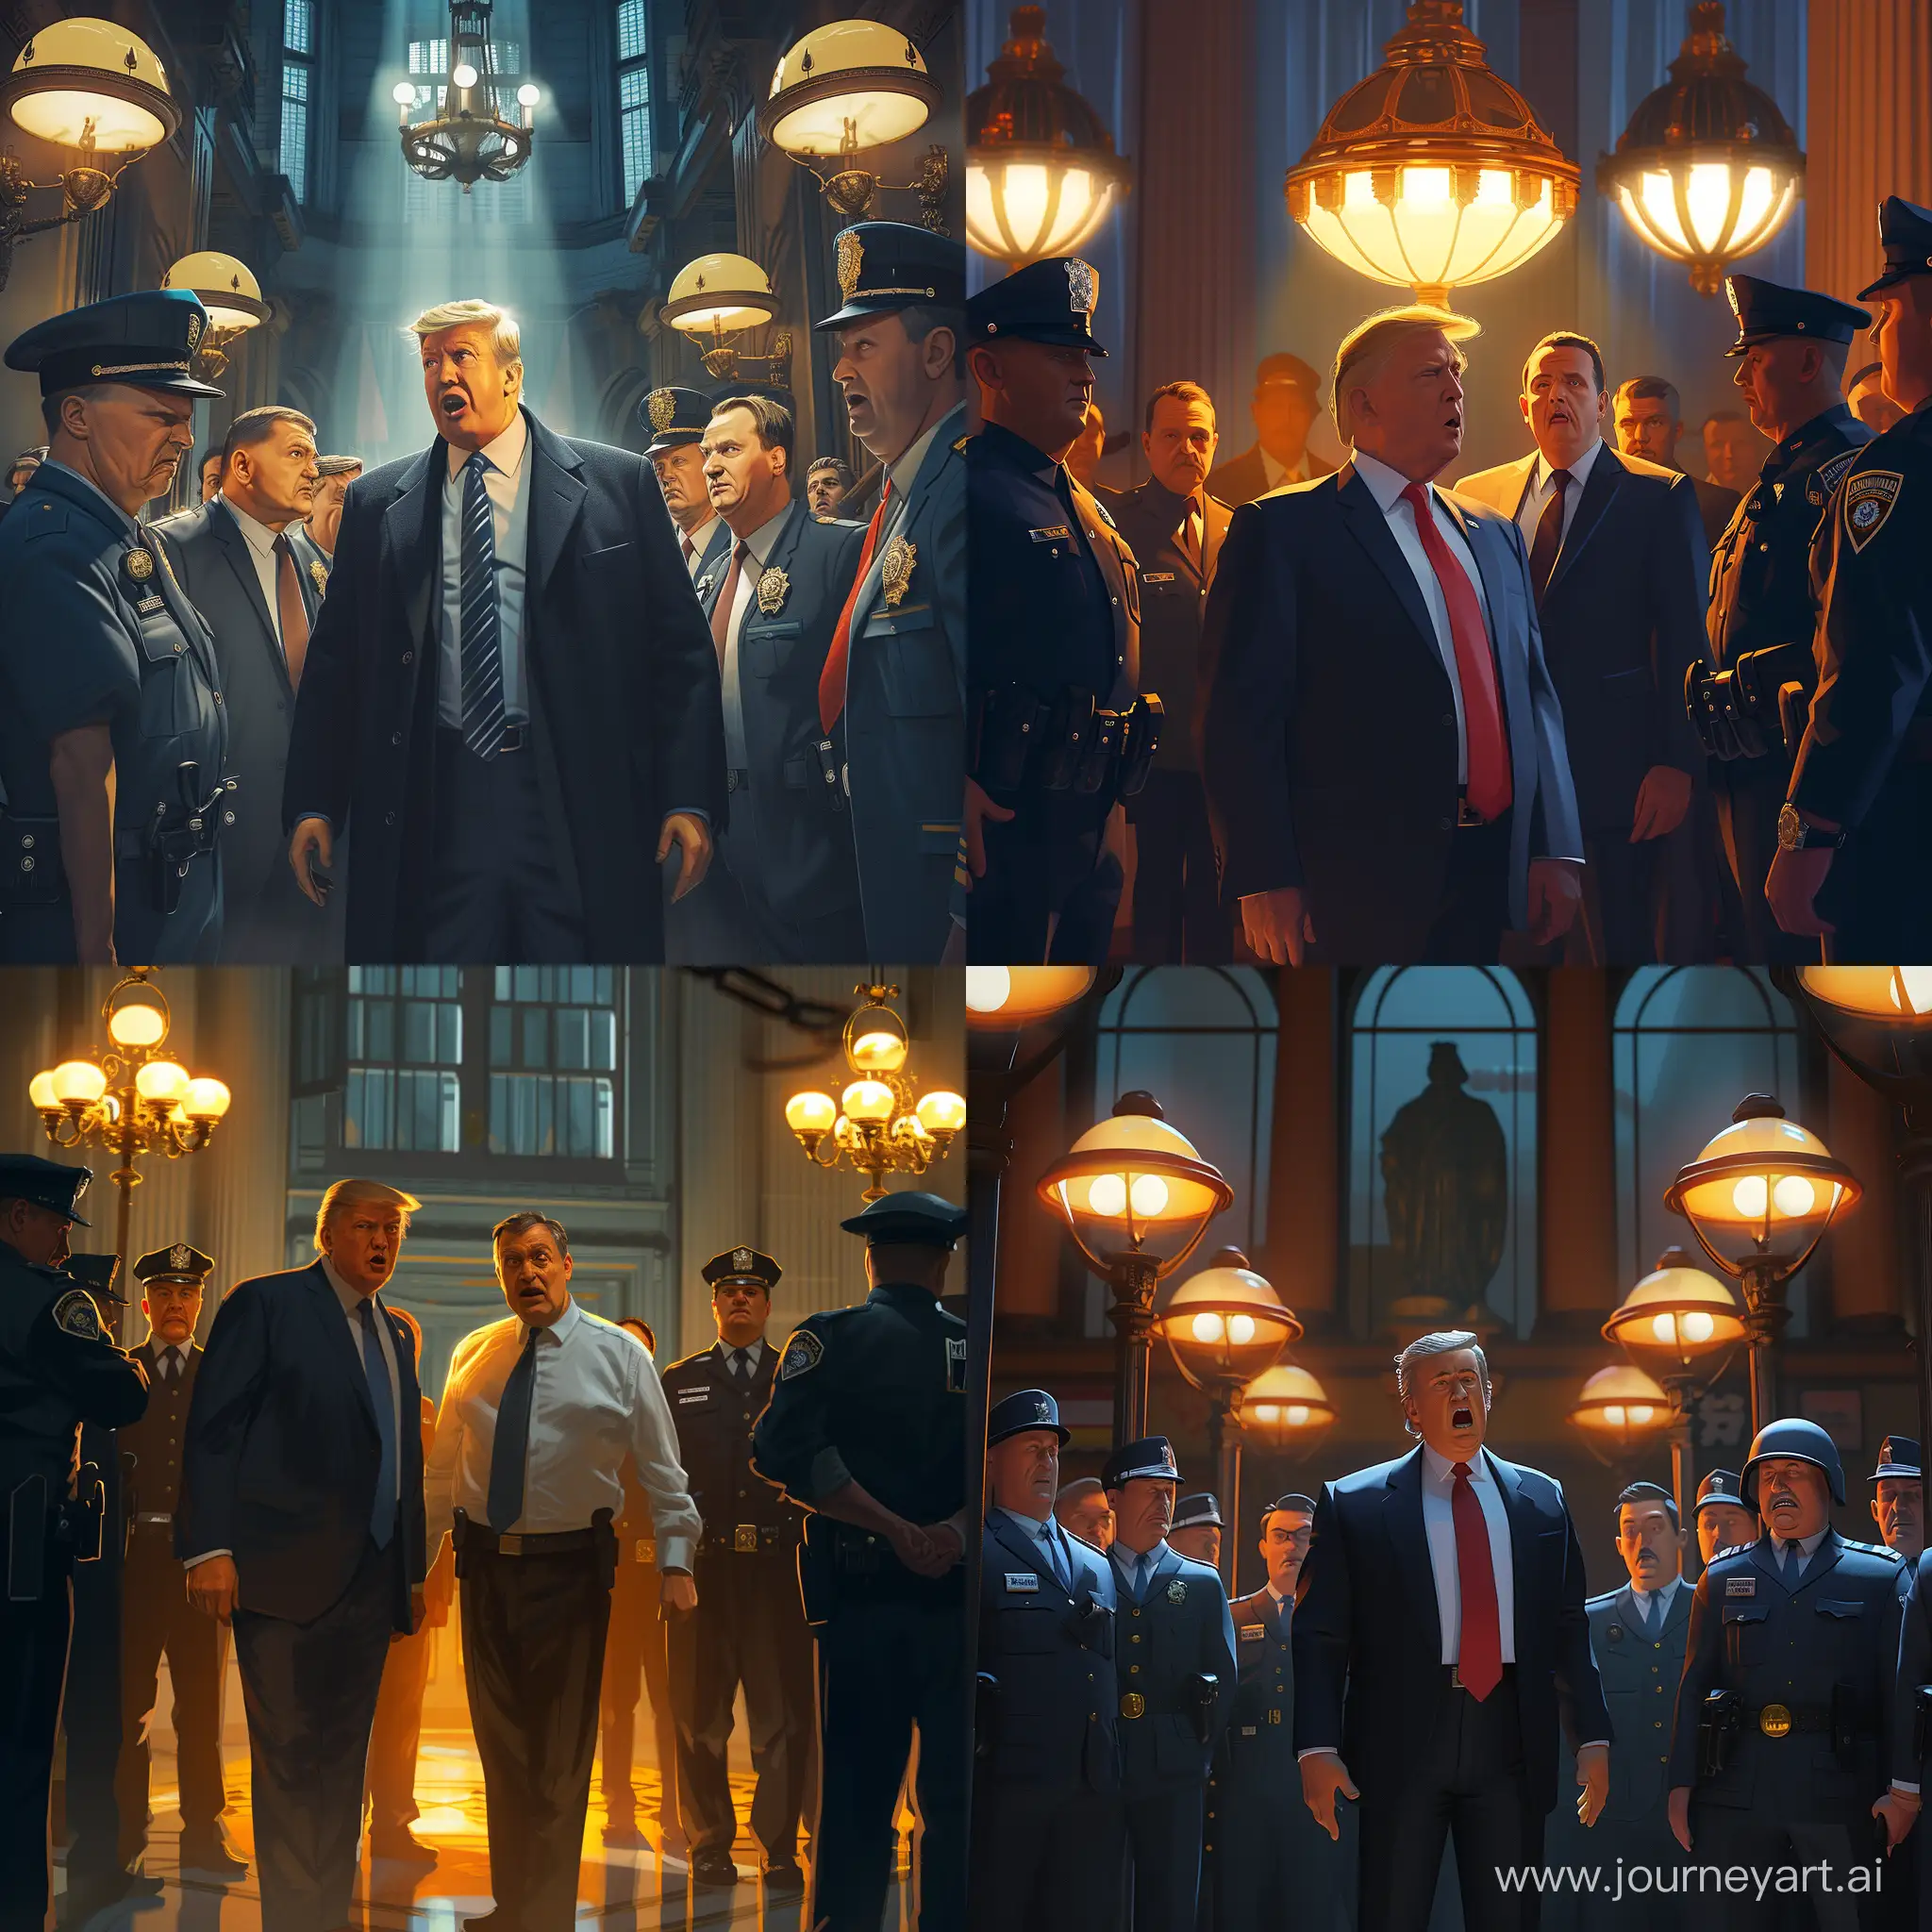 Сцена происходит в освещенной яркими лампами полицейской станции. Трамп и Орбан стоят в центре, окруженные
полицейскими в униформе. Орбан выглядит удивленным, а Трамп - возмущенным. Изображение должно быть отрендерено в реалистичном стиле с высокой детализацией, чтобы передать напряженную атмосферу ареста. Свет от ламп создает резкие тени и отражения, добавляя драматизма сцене. Настроение изображения - напряженное и недовольное, захватывая момент ареста 

